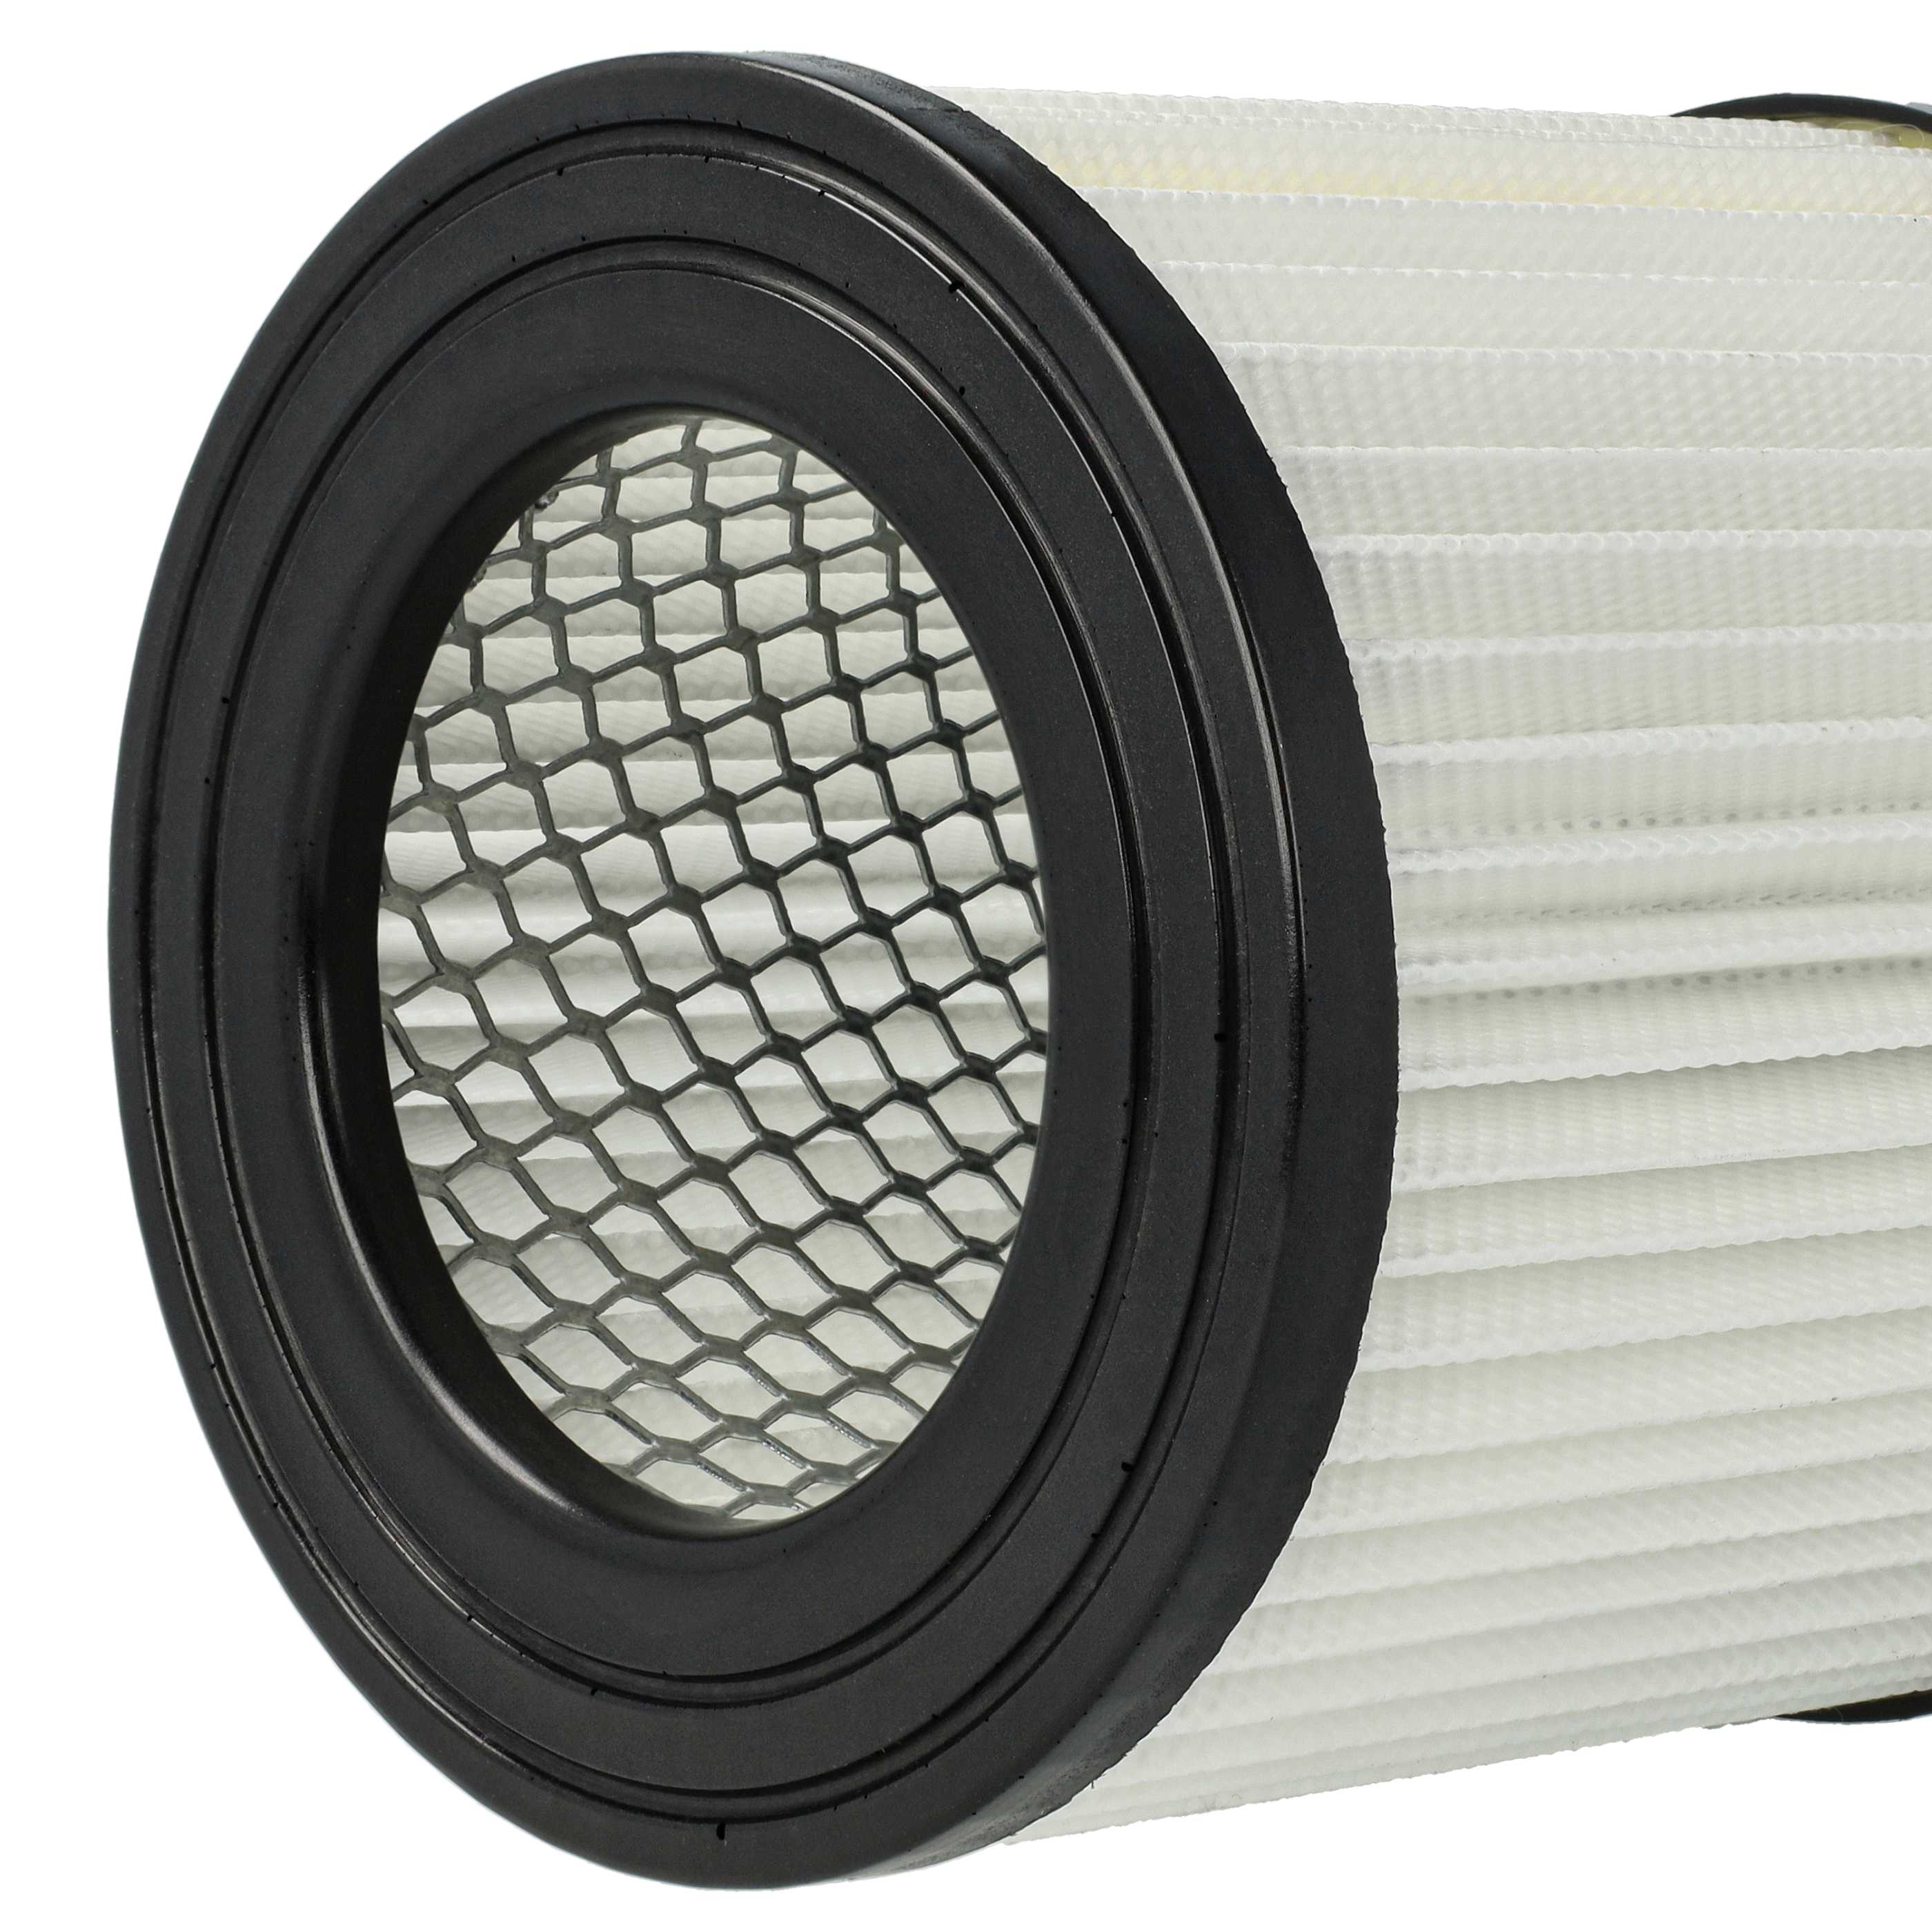 2x Filtro reemplaza Scheppach 7907702702 para aspiradora - filtro Hepa blanco